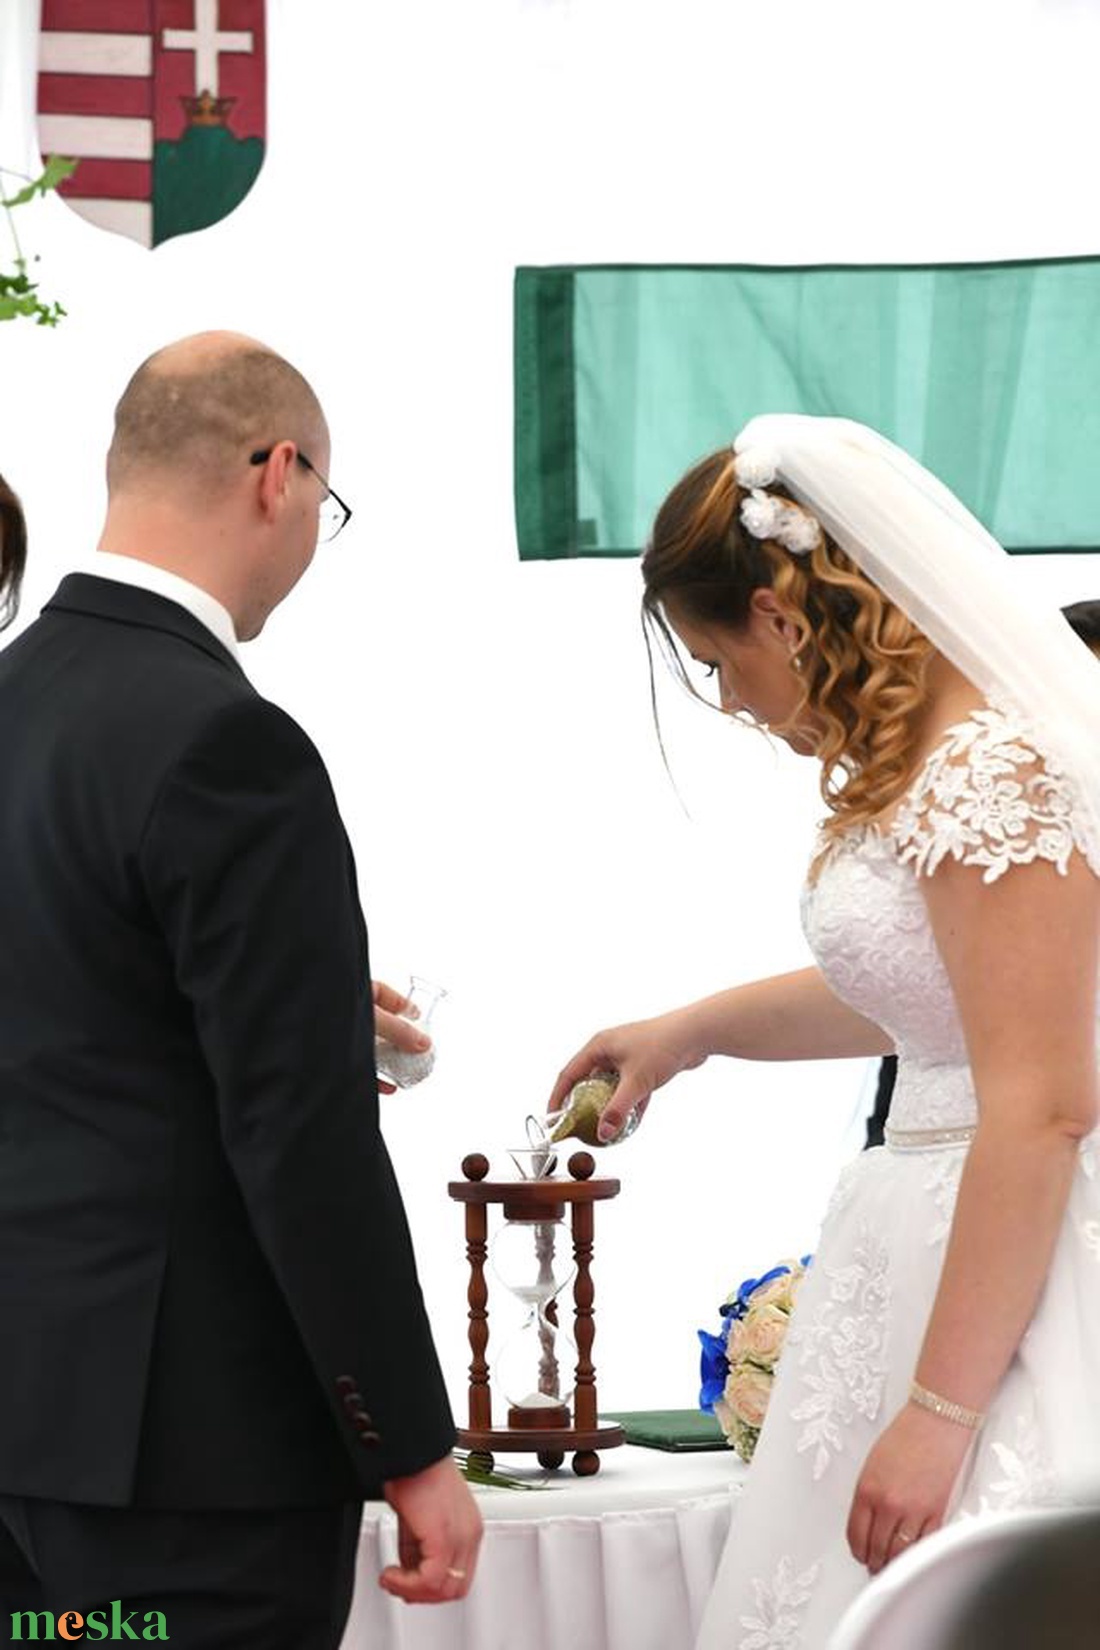 Homokóra fa házban esküvőre díszes oszlopokkal - esküvő - emlék & ajándék - nászajándék - ceremónia szett - Meska.hu